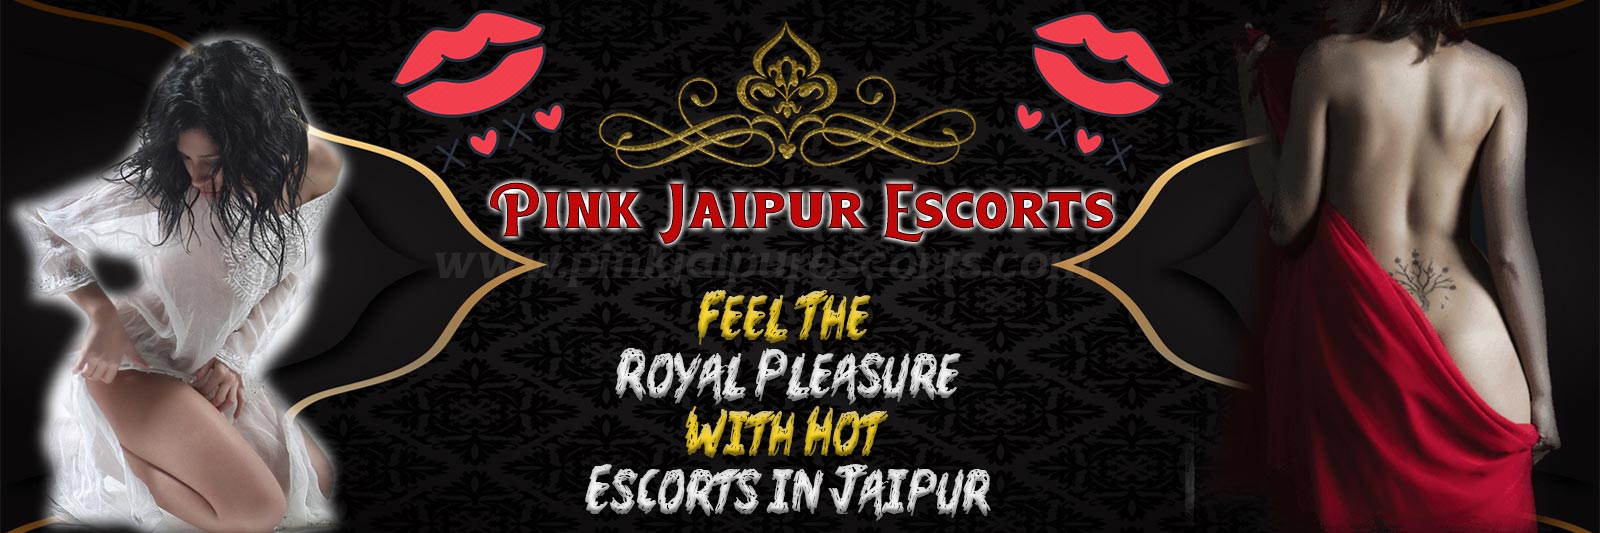 Escort in Jaipur